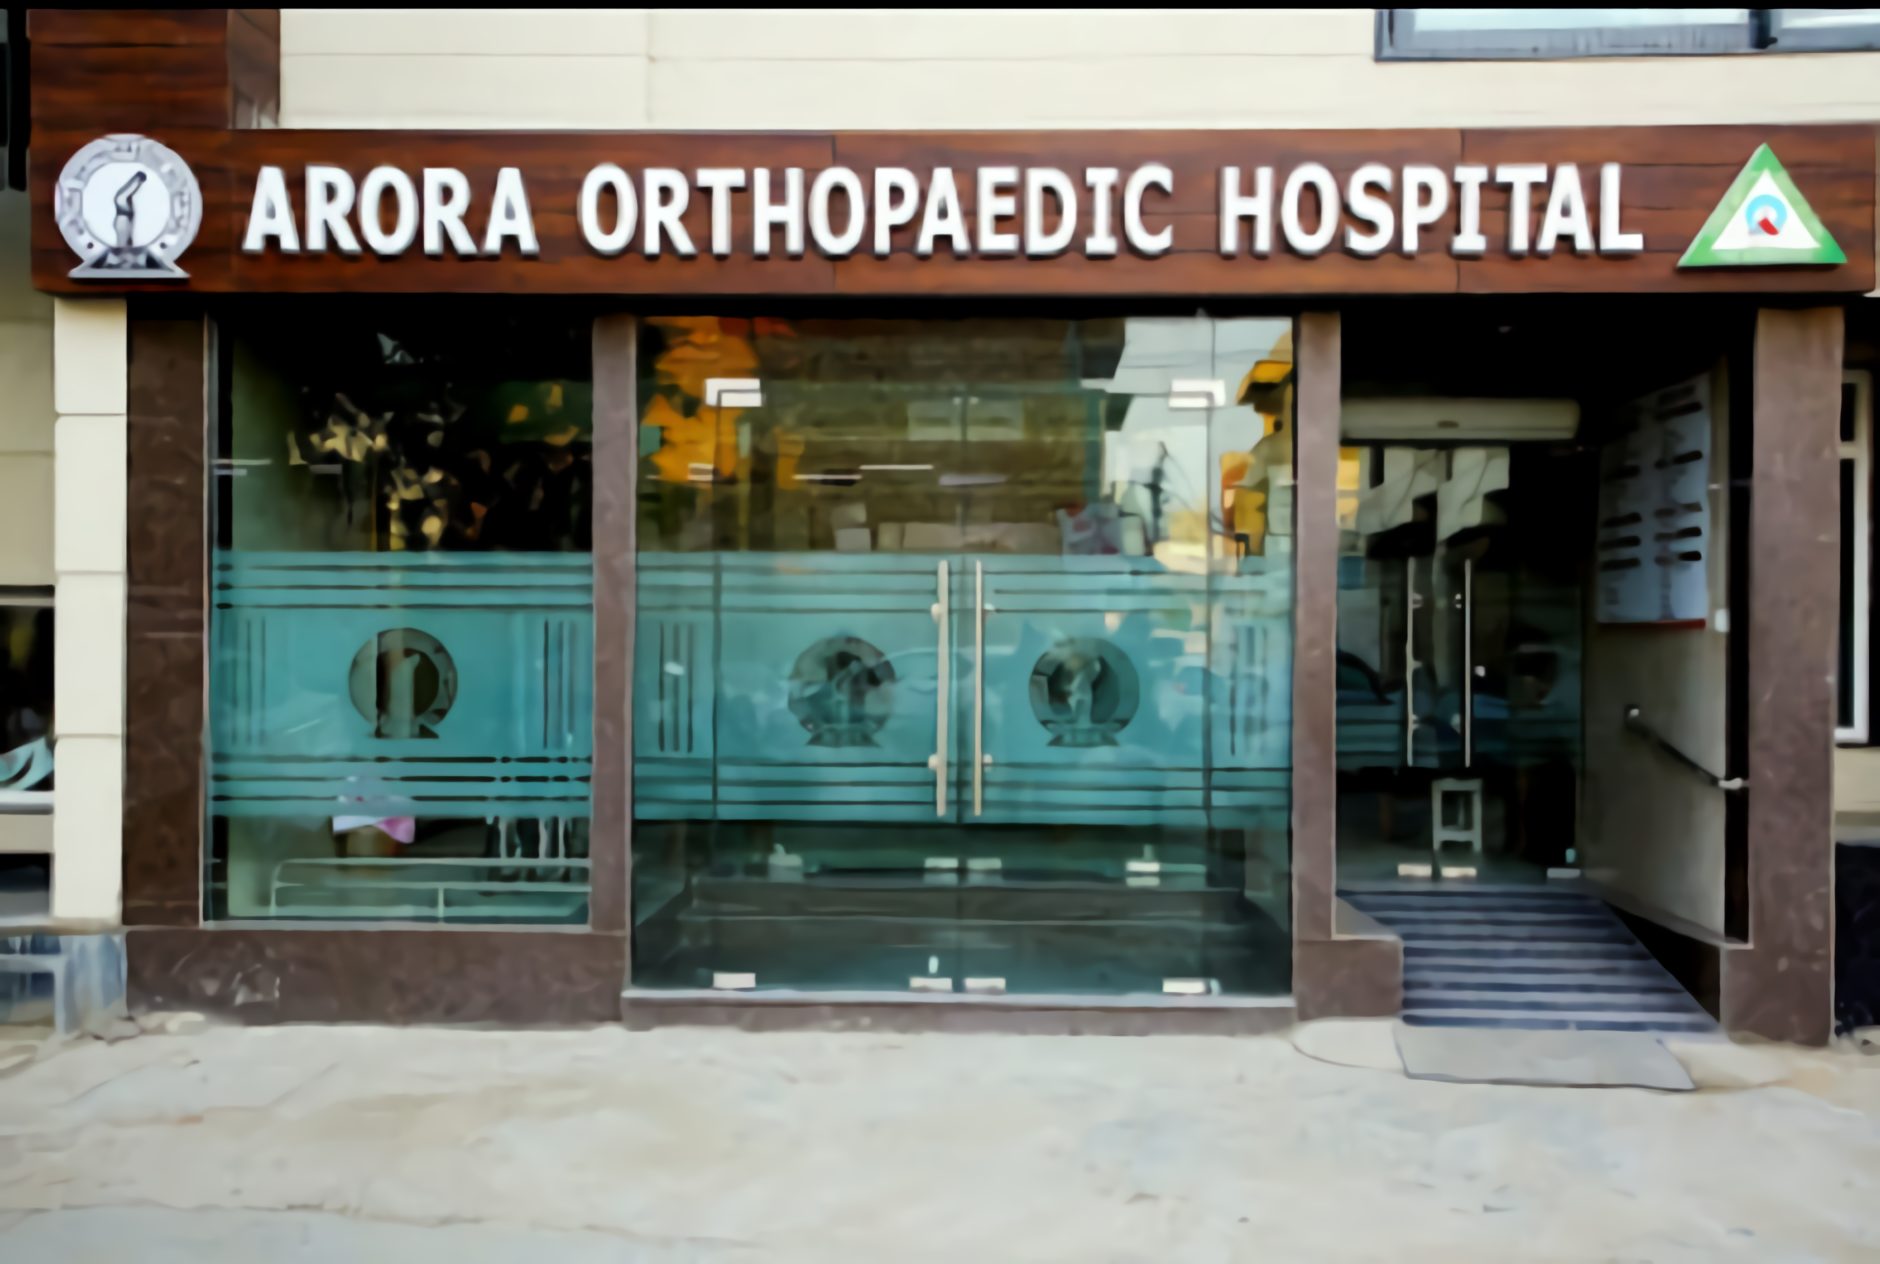 Arora Orthopaedic Hospital